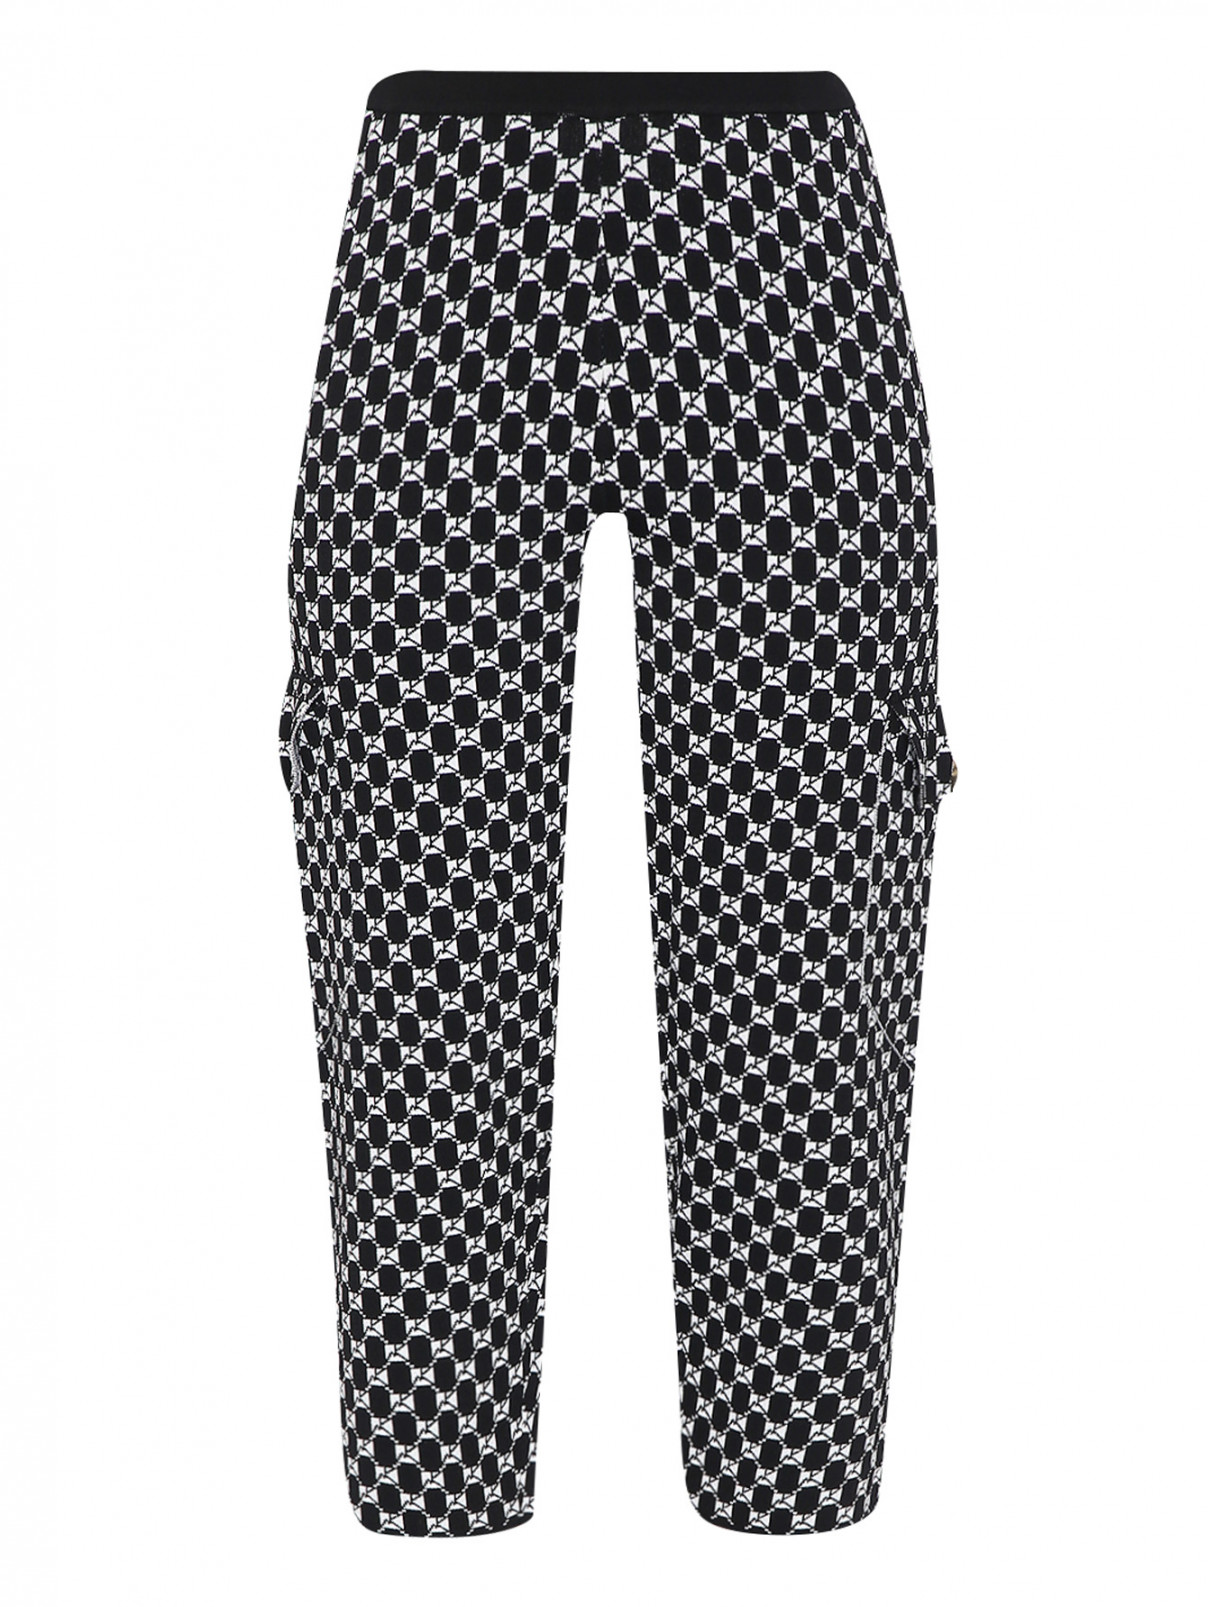 Трикотажные брюки на резинке с узором Marina Rinaldi  –  Общий вид  – Цвет:  Узор